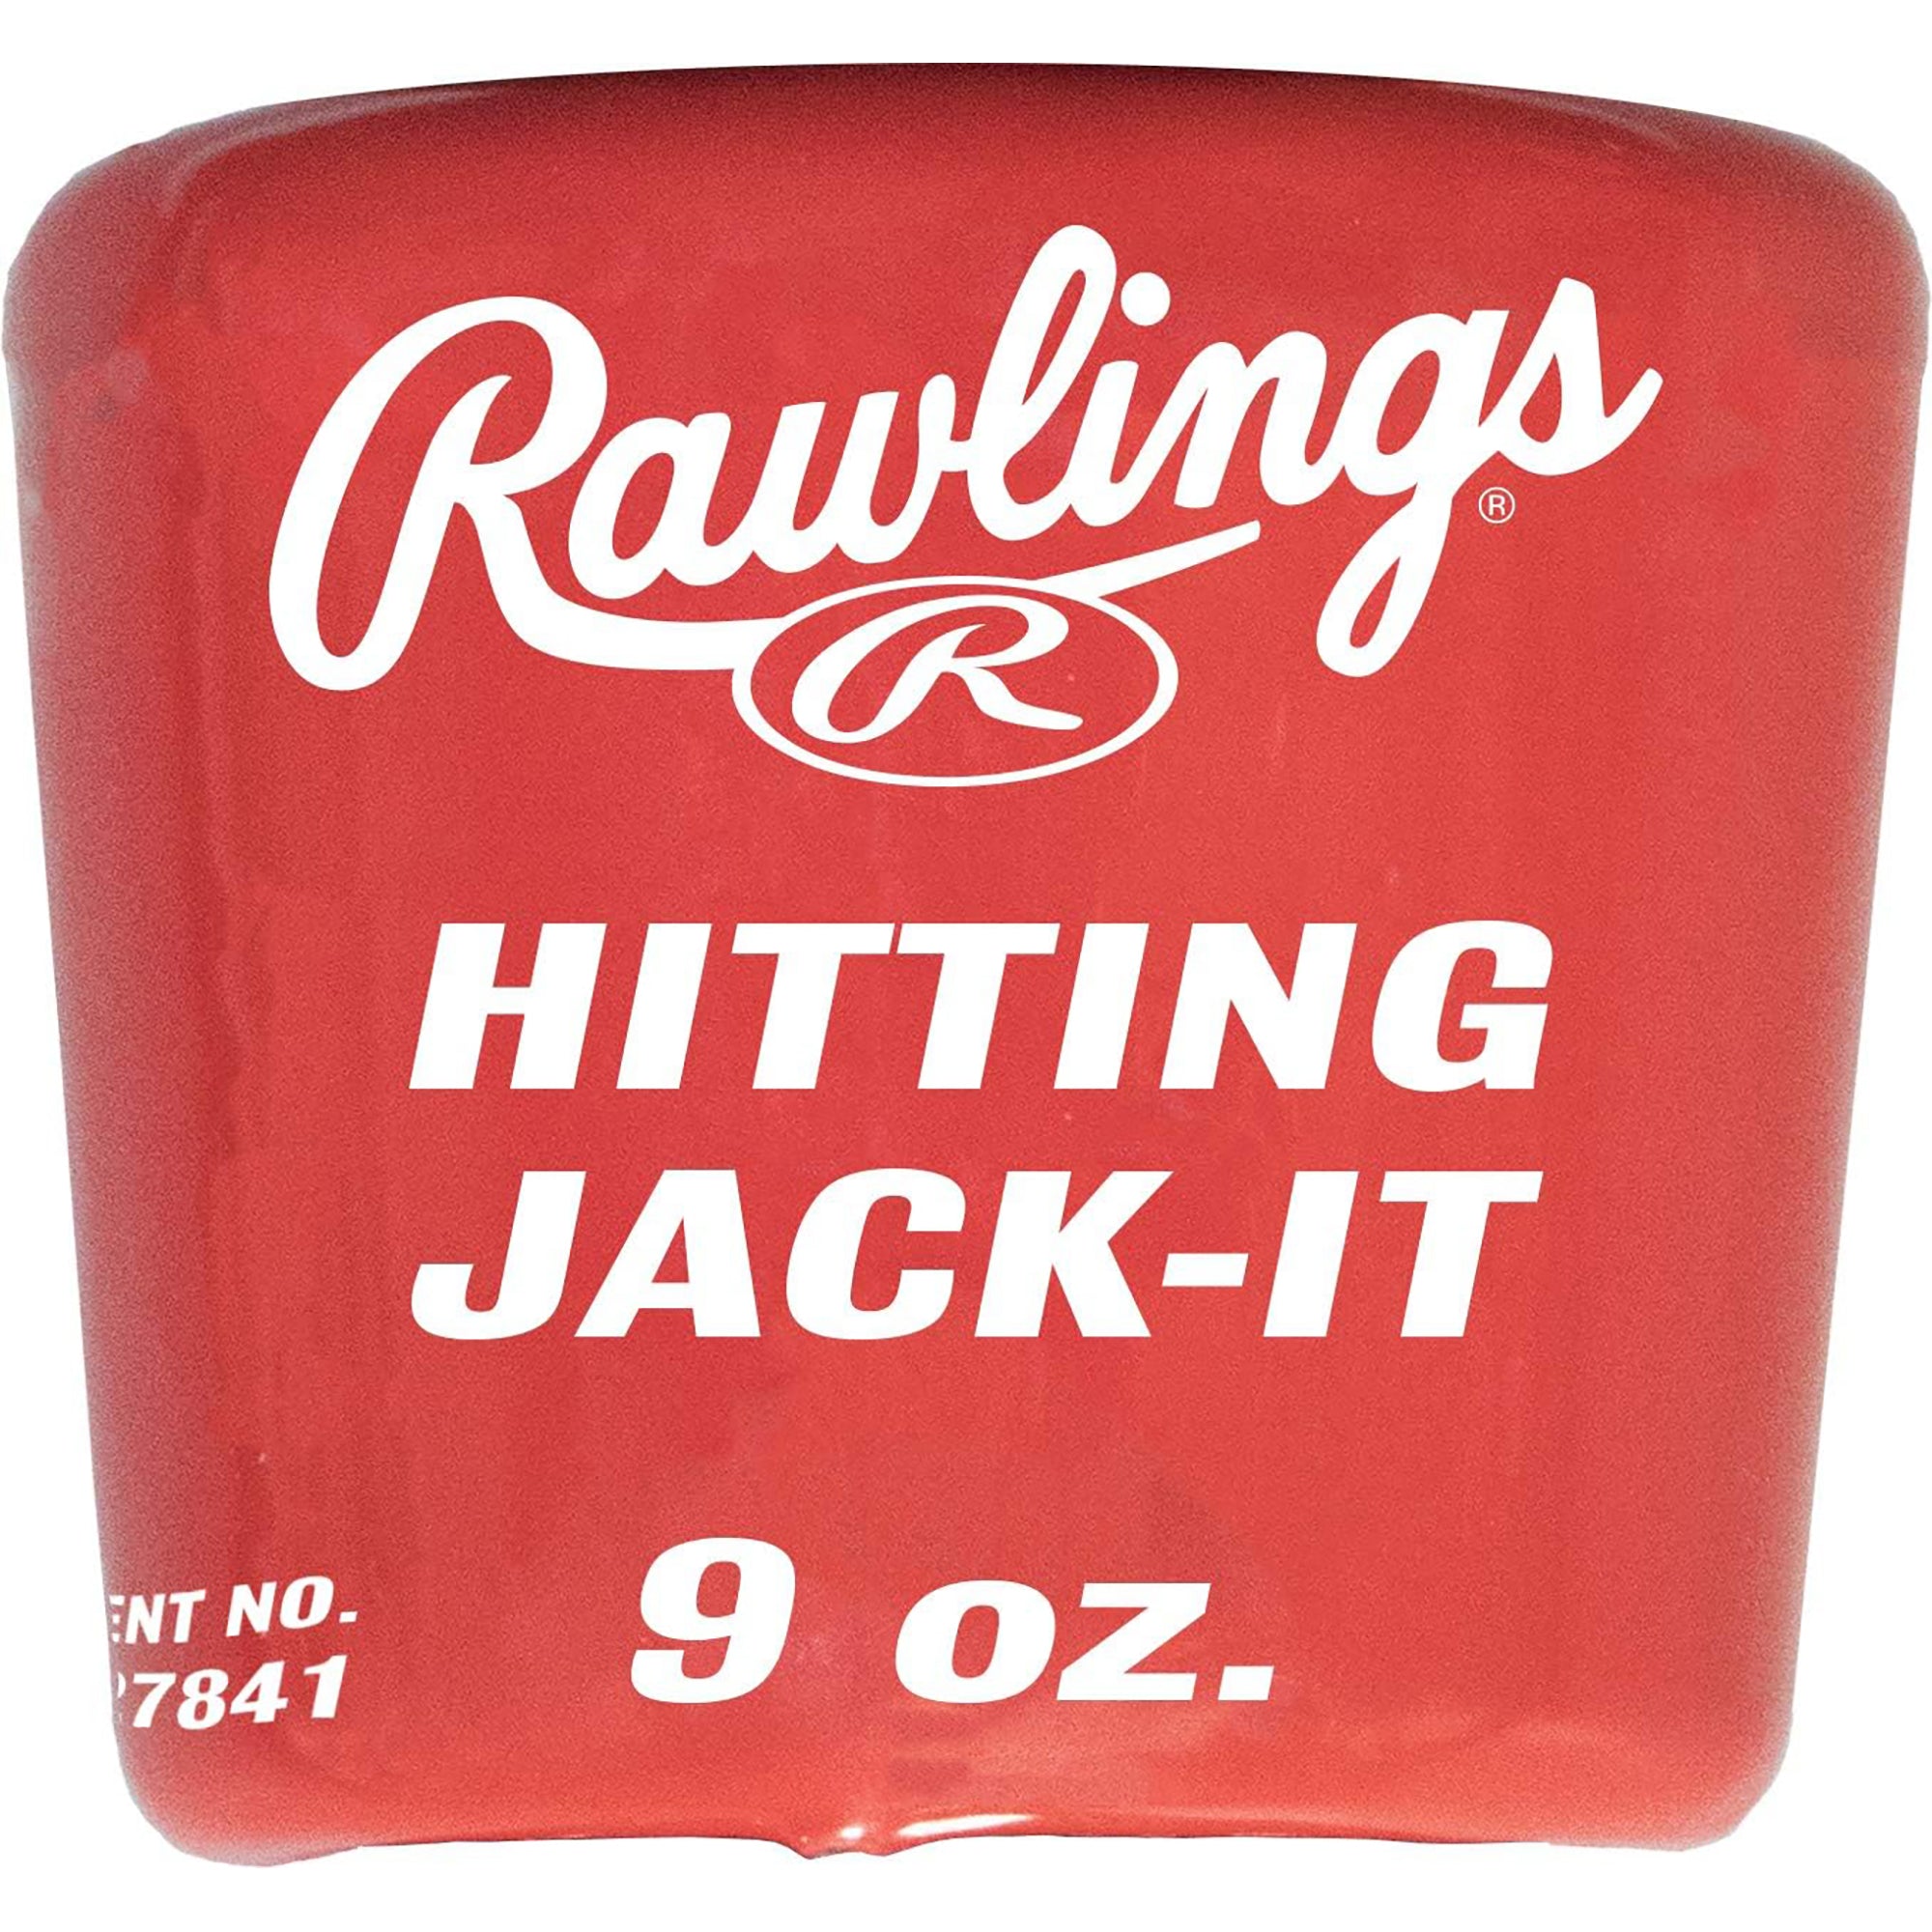 Rawlings Baseball/Softball Hitting Jack-It Training Bat Weight Rawlings